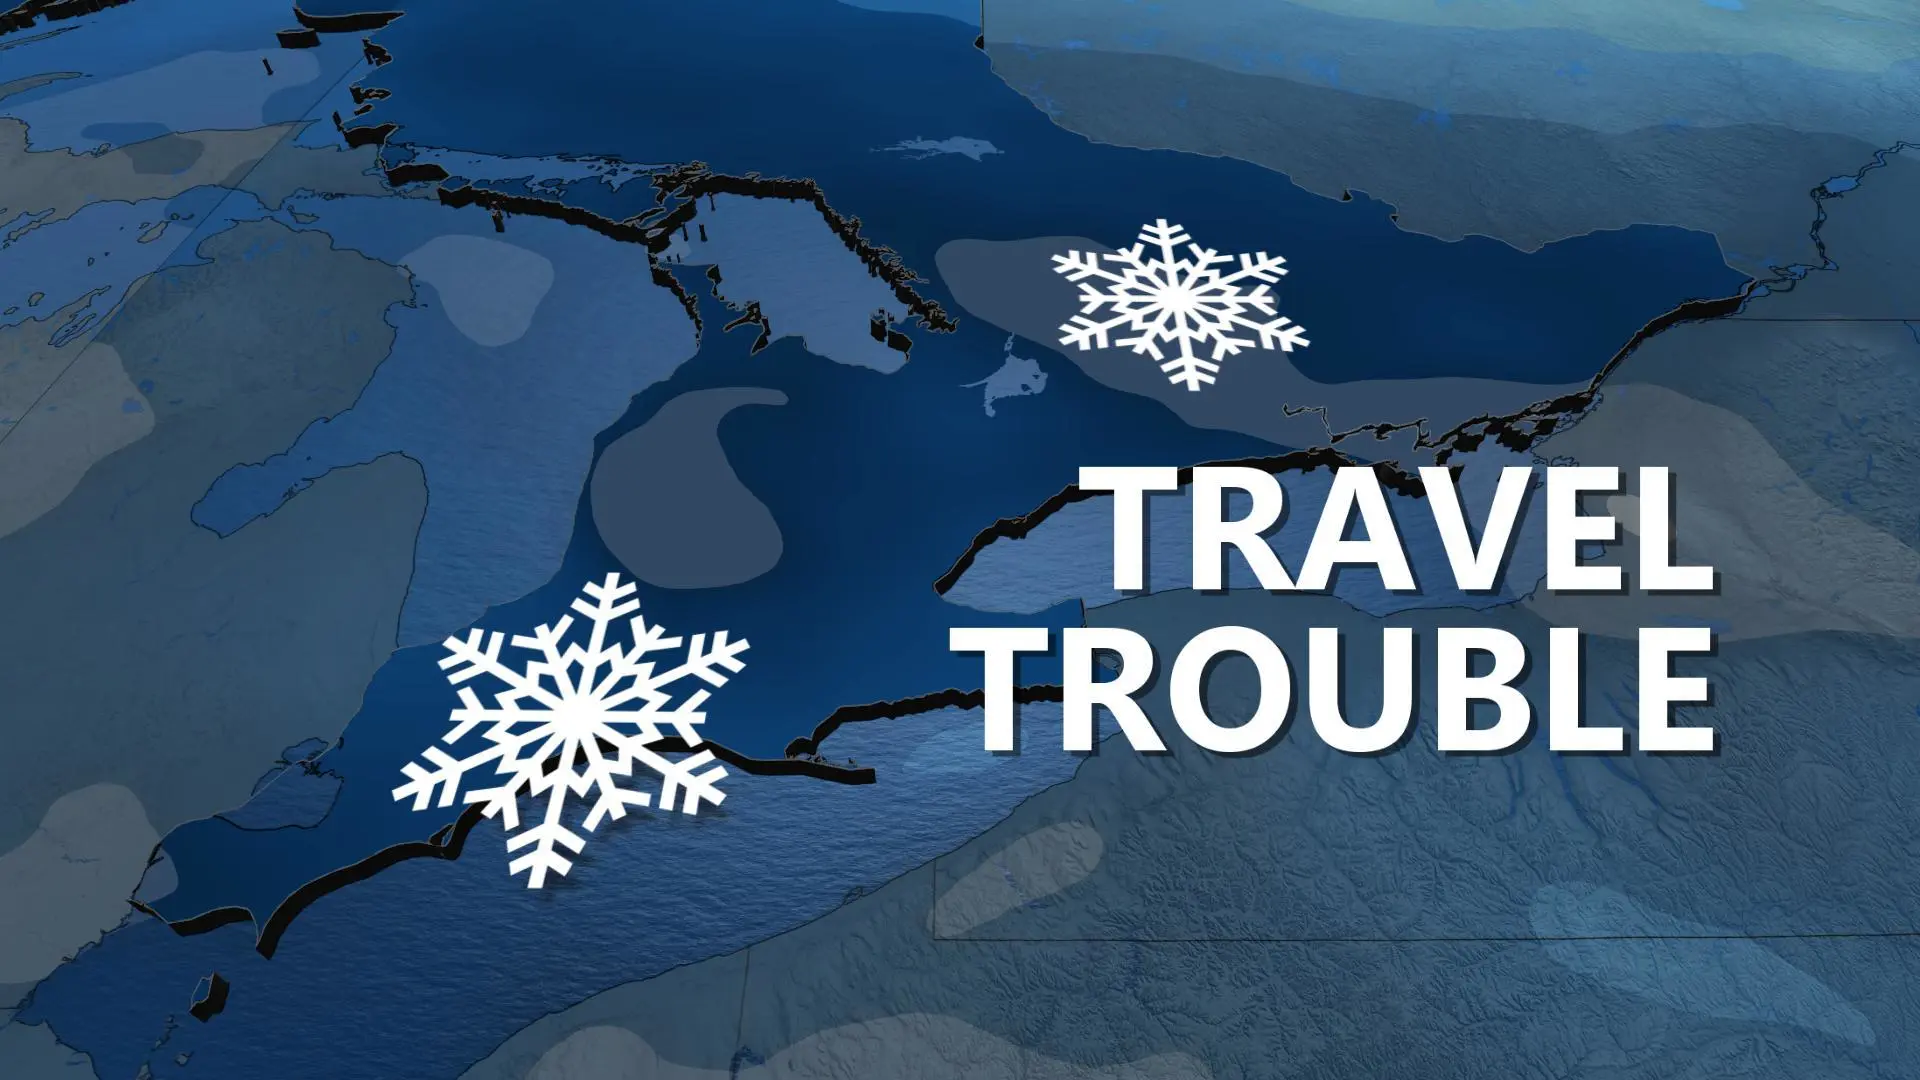 Ontario: Snowfall warnings blanket region ahead of heavy snow